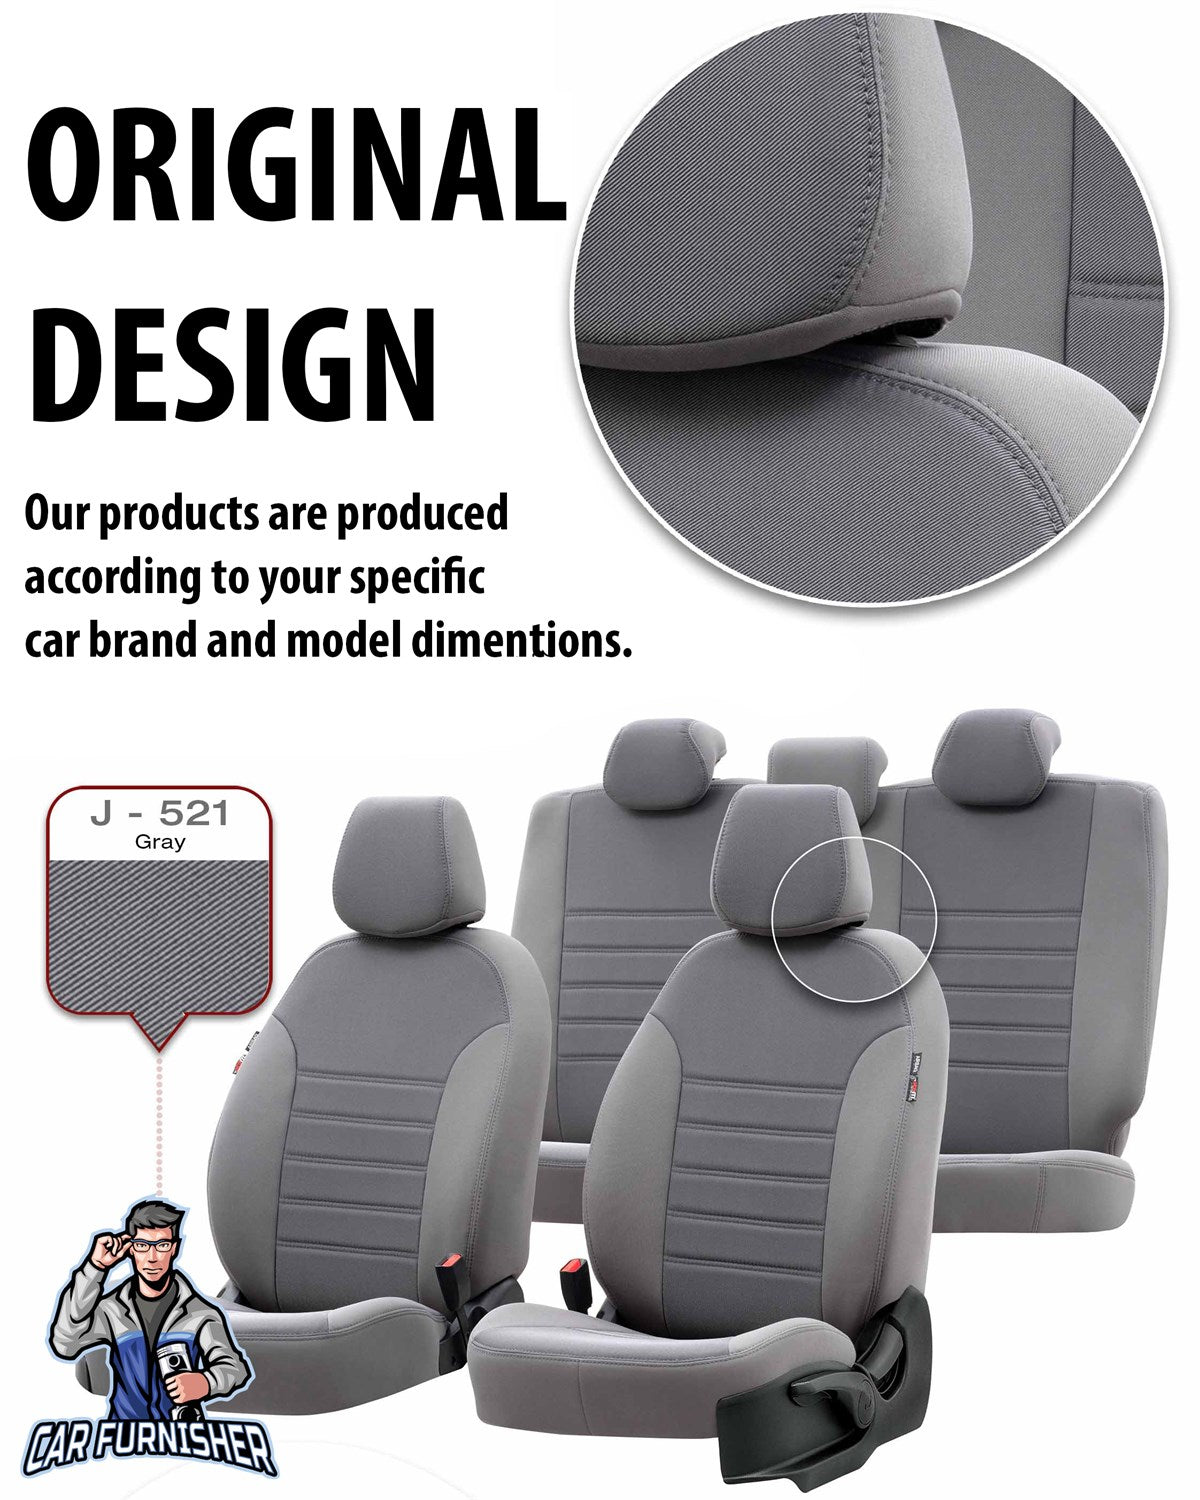 Renault Scenic Seat Covers Original Jacquard Design Dark Beige Jacquard Fabric